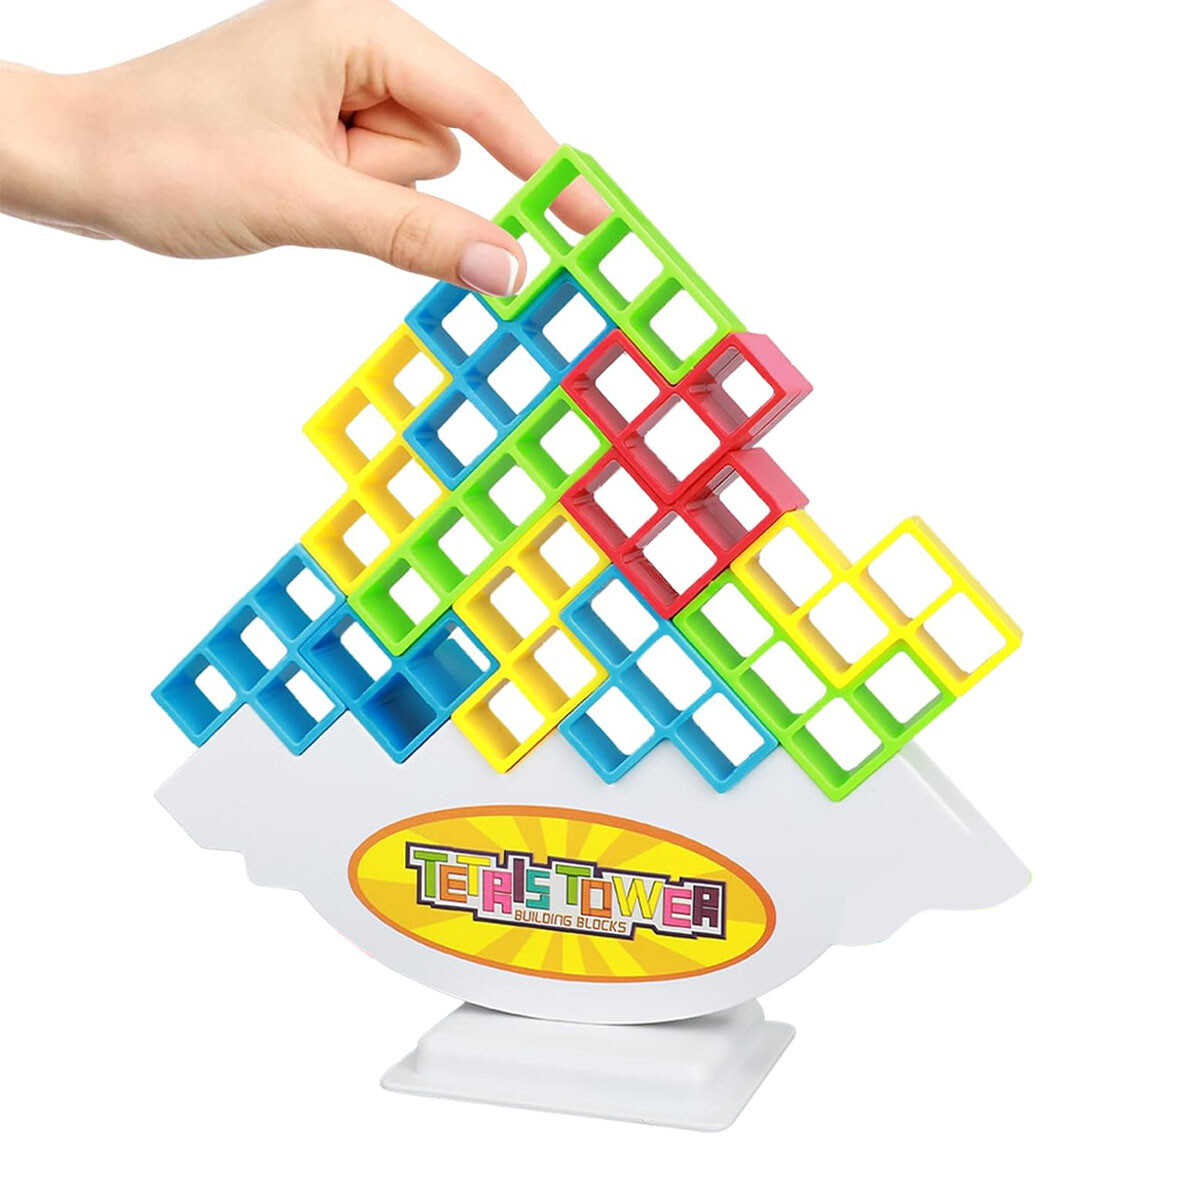 Torre Tetris Juego de Bloques Construcción y Equilibrio 16Pz - Multicolor 